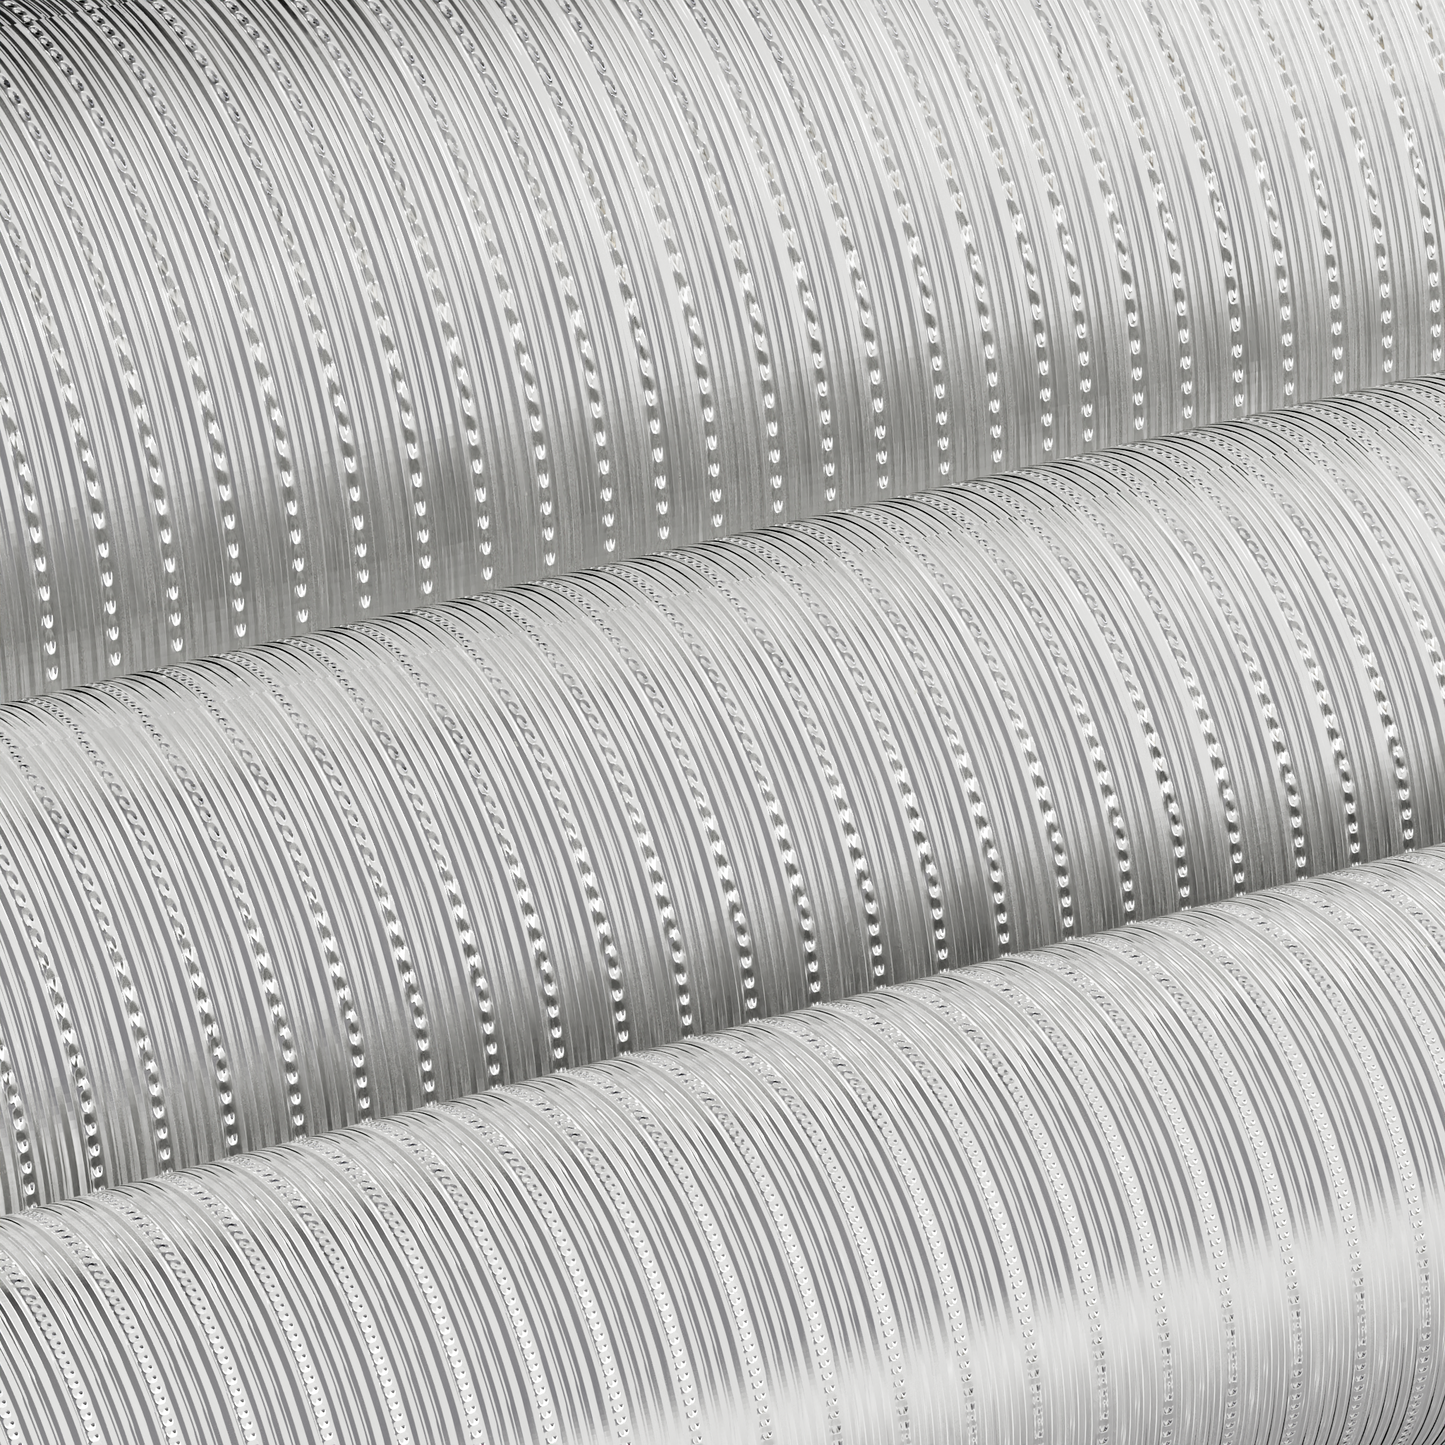 Semi Rigid Aluminium Flexible Ducting - 4 Metre